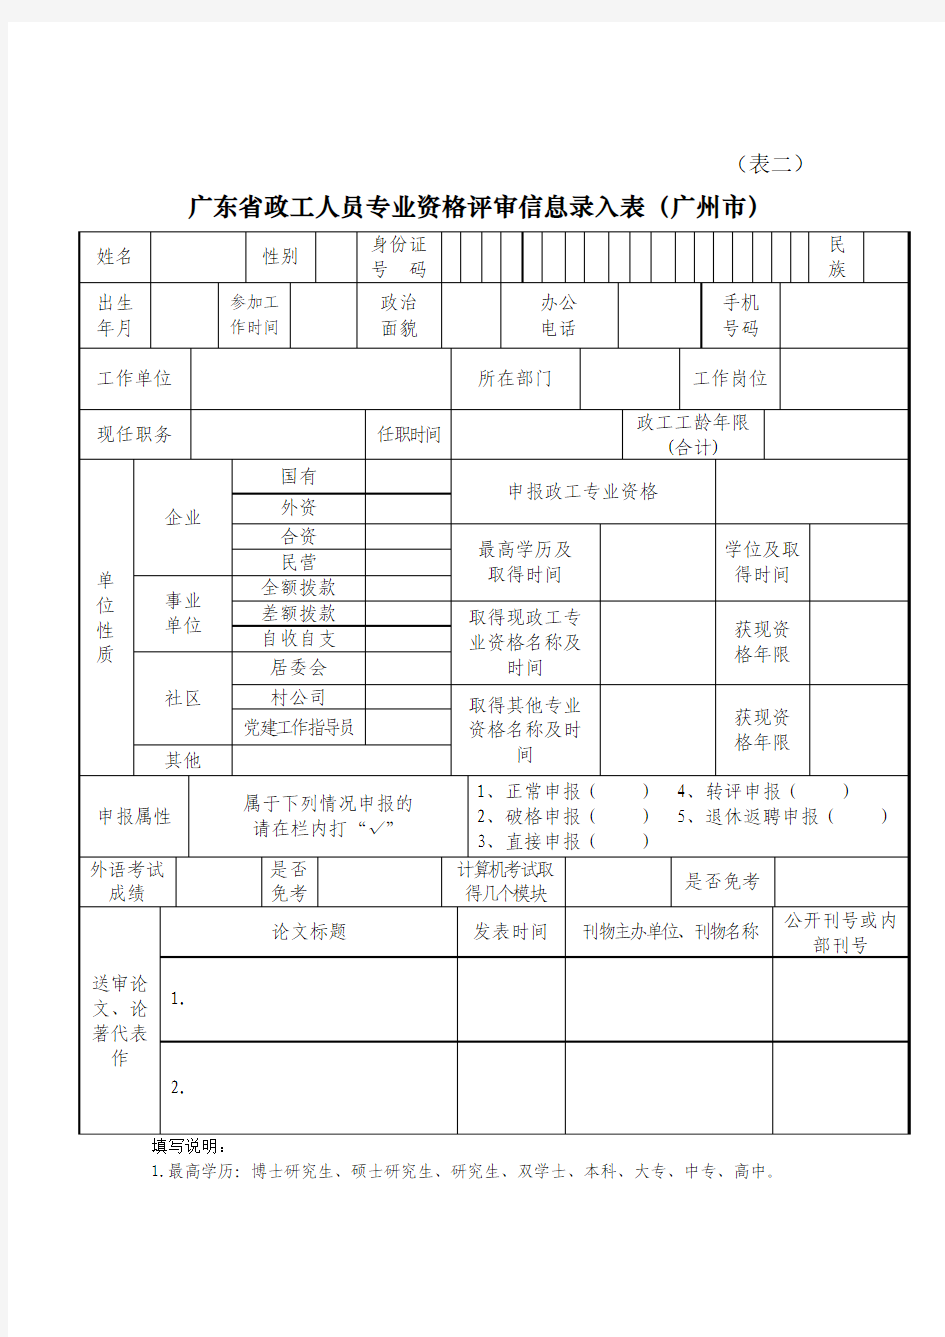 《广东省政工人员专业资格评审送审材料目录表》10份(表一至表十)